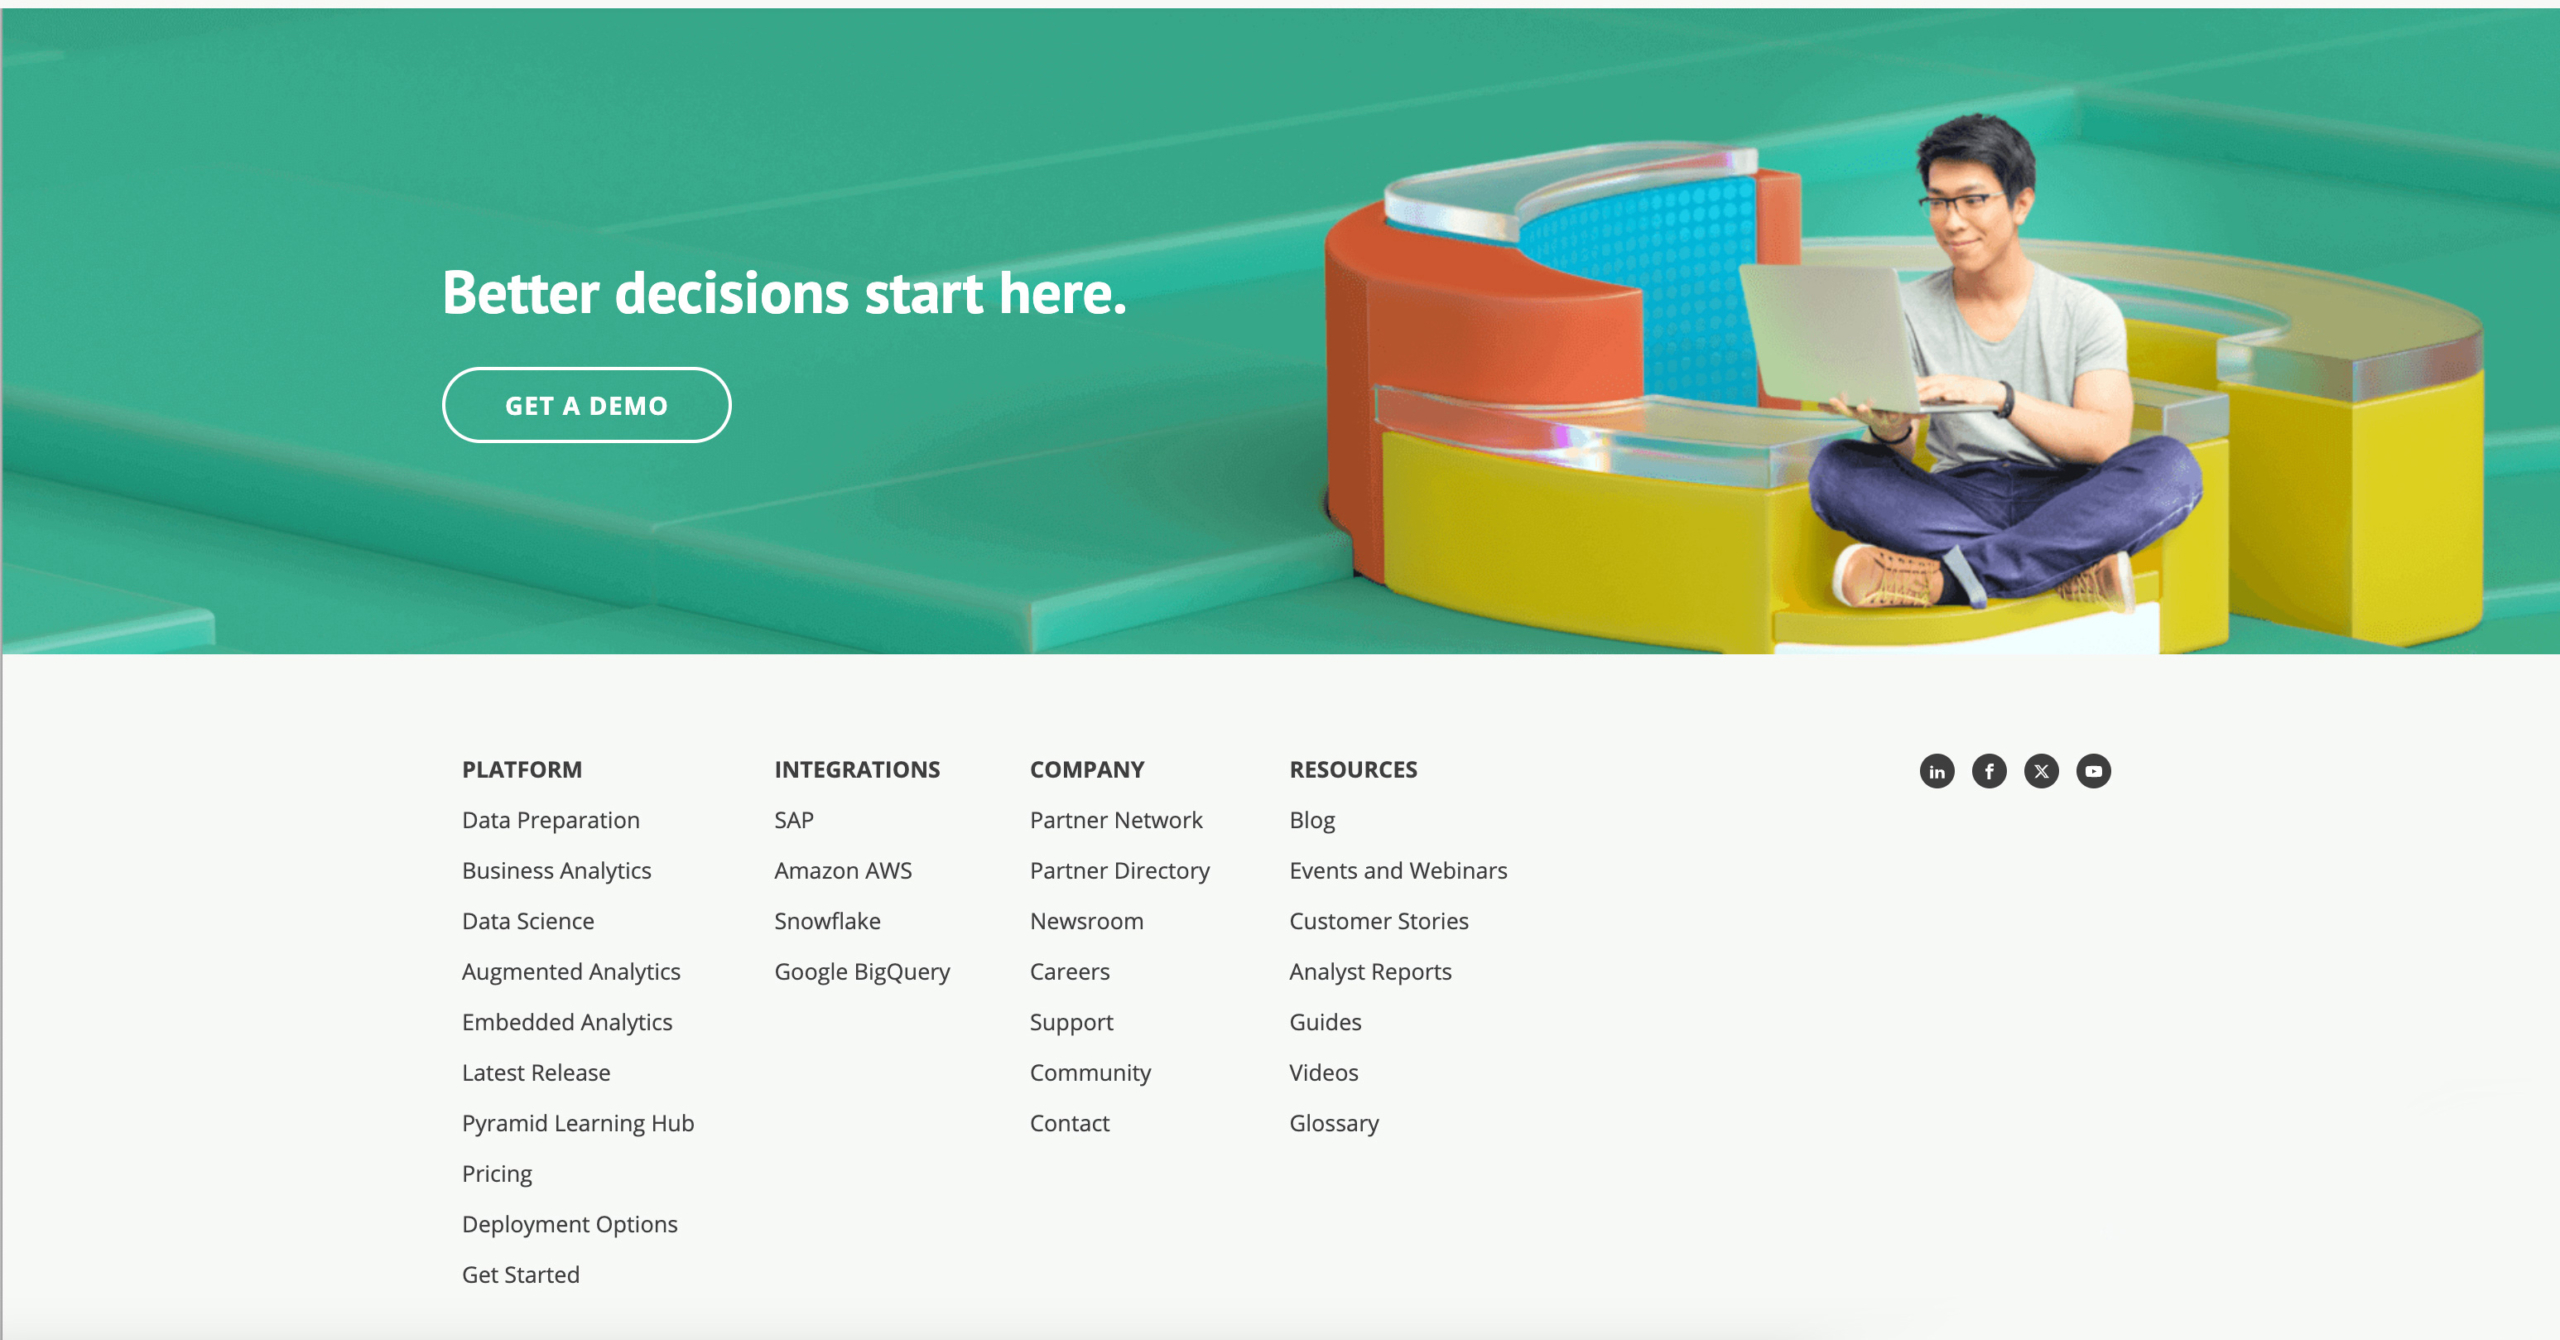 Homepage screenshot of Pyramid Analytics